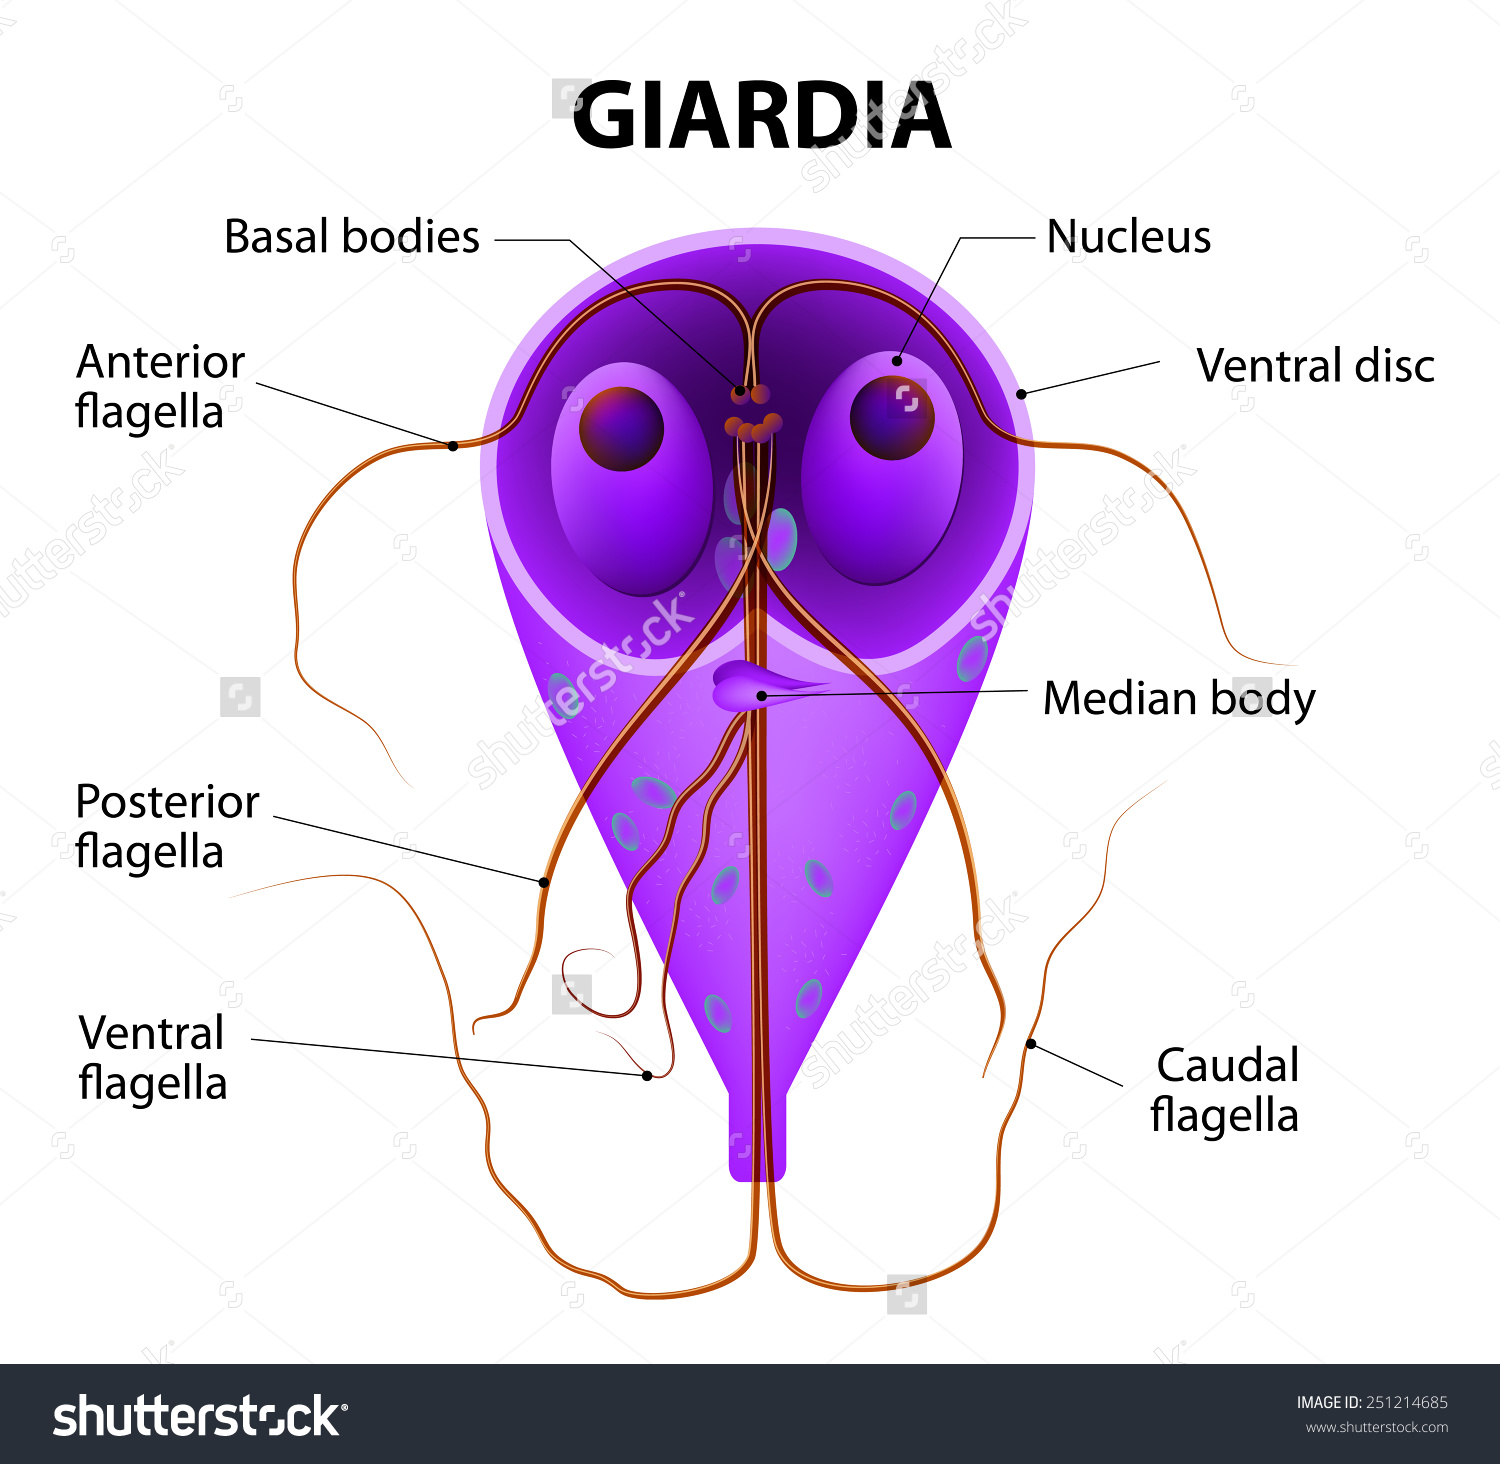 A giardiasis fertőző ea személyek között a legfurcsább parazita